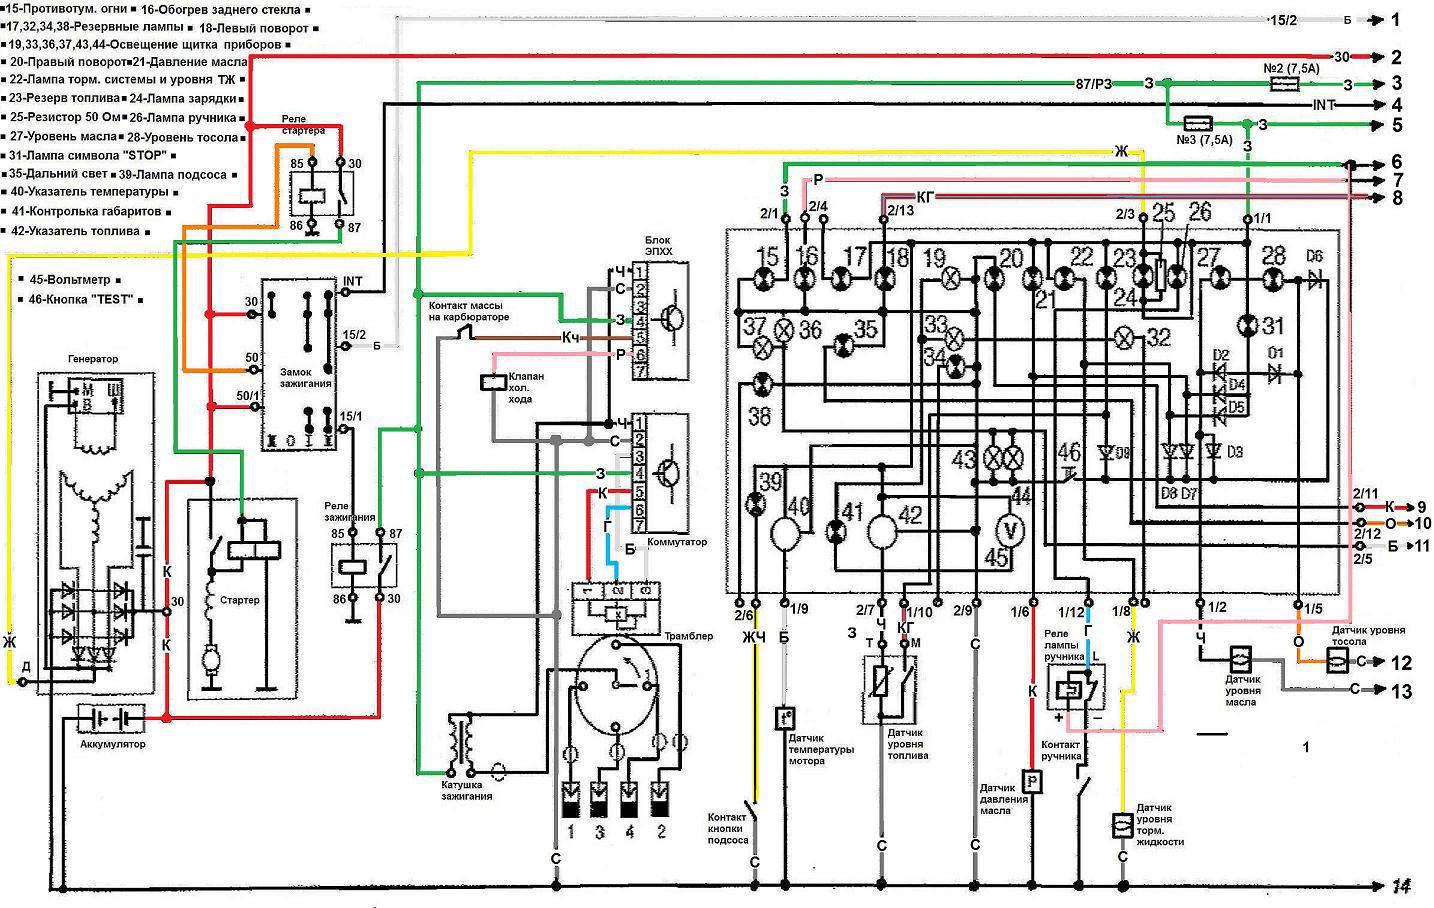 Схема электропроводки заз 110307 - 91 фото